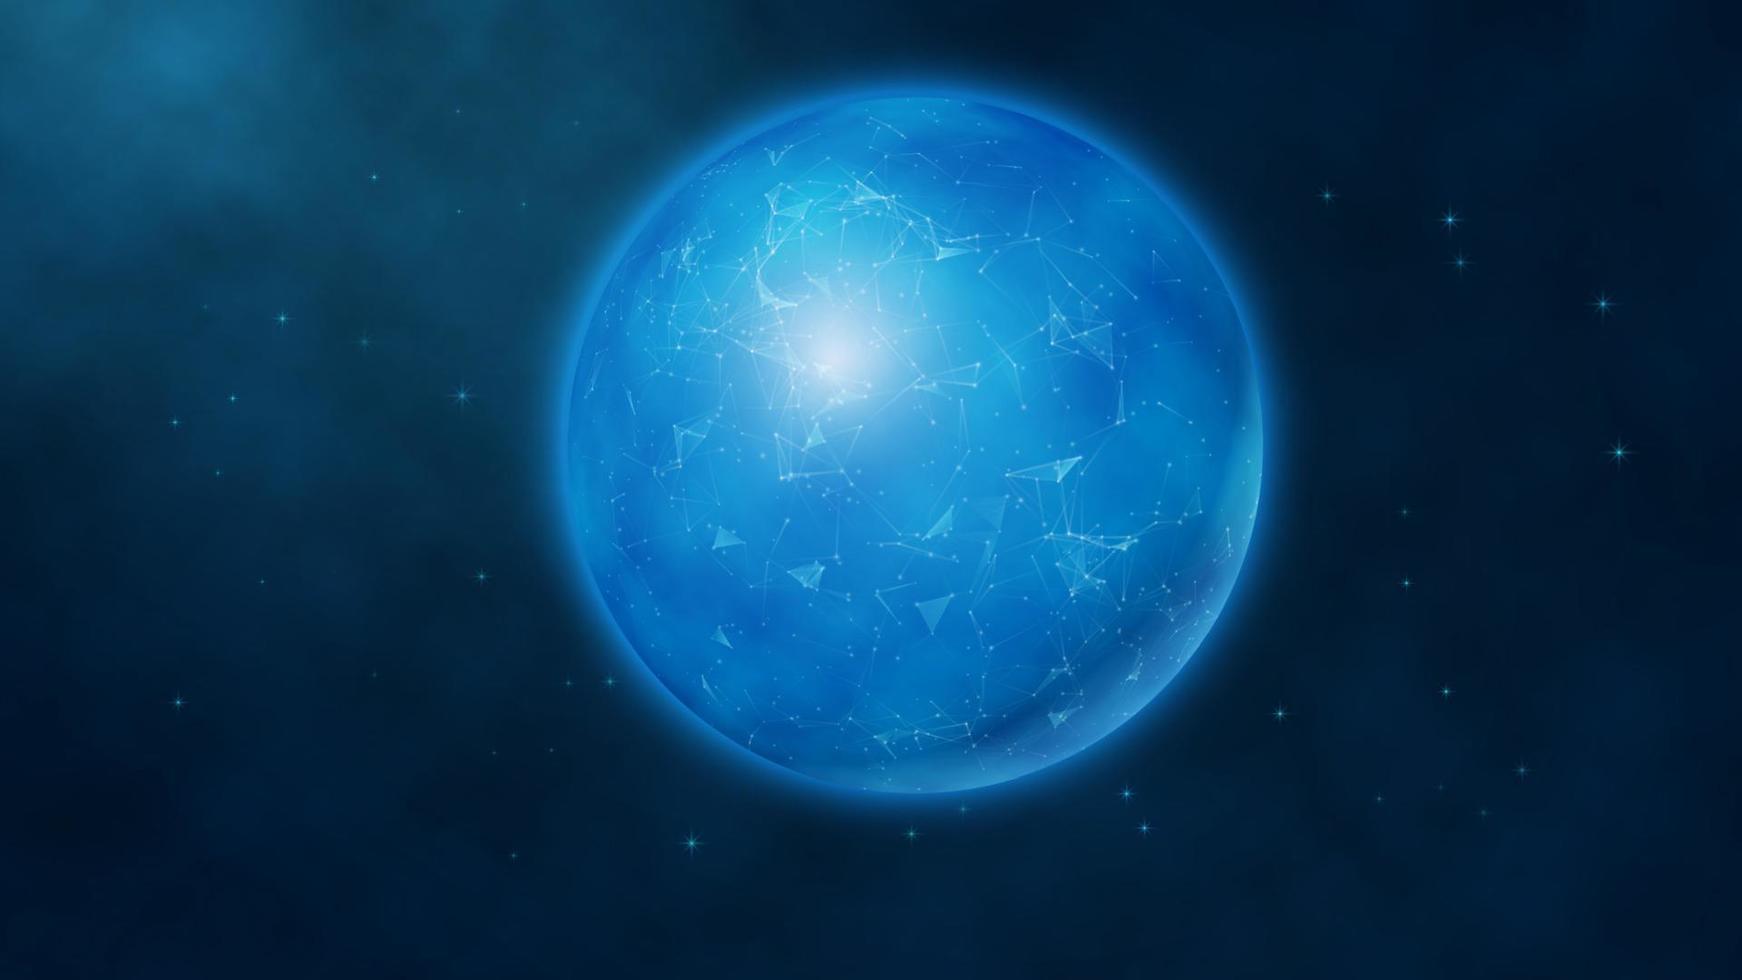 globo digital futurista azul abstracto sobre un fondo espacial con estrellas y elementos de plexo. conocimiento de los negocios. triangulación gran concepto de datos. ilustración vectorial eps10 vector